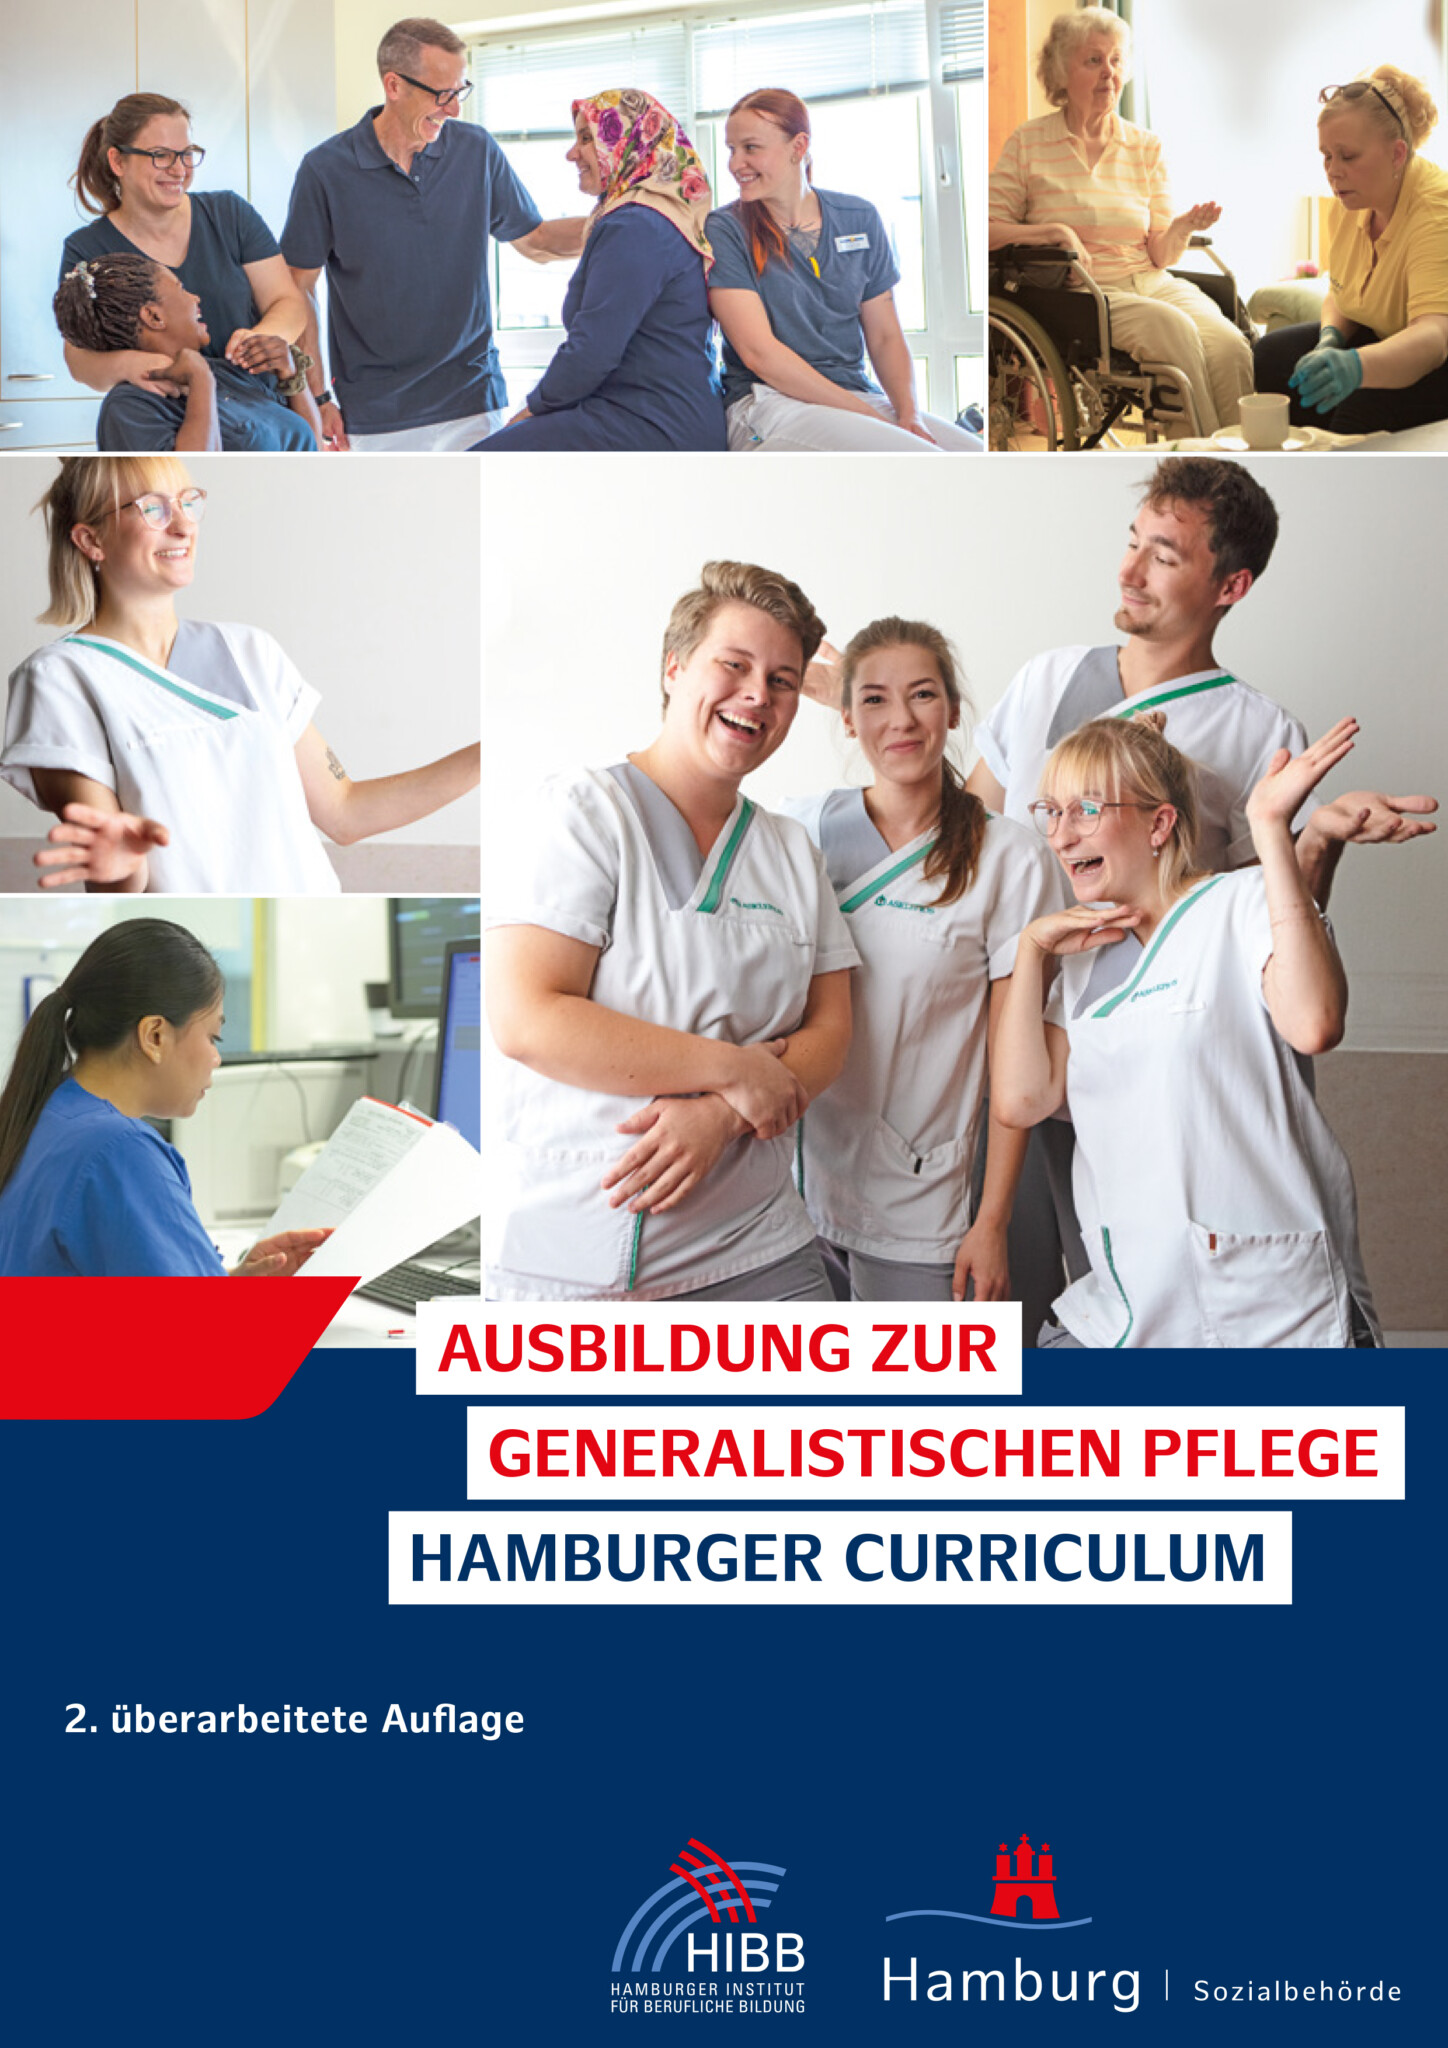 Das Bild zeigt die Titelseite der Broschüre Curriculum. Oben ist eine Collage mit 5 Bildern aus der Pflegeausbildung mit jungen Auszubildenden. Unten ist auf dunkelblauen Hintergrund der Titel der Broschüre